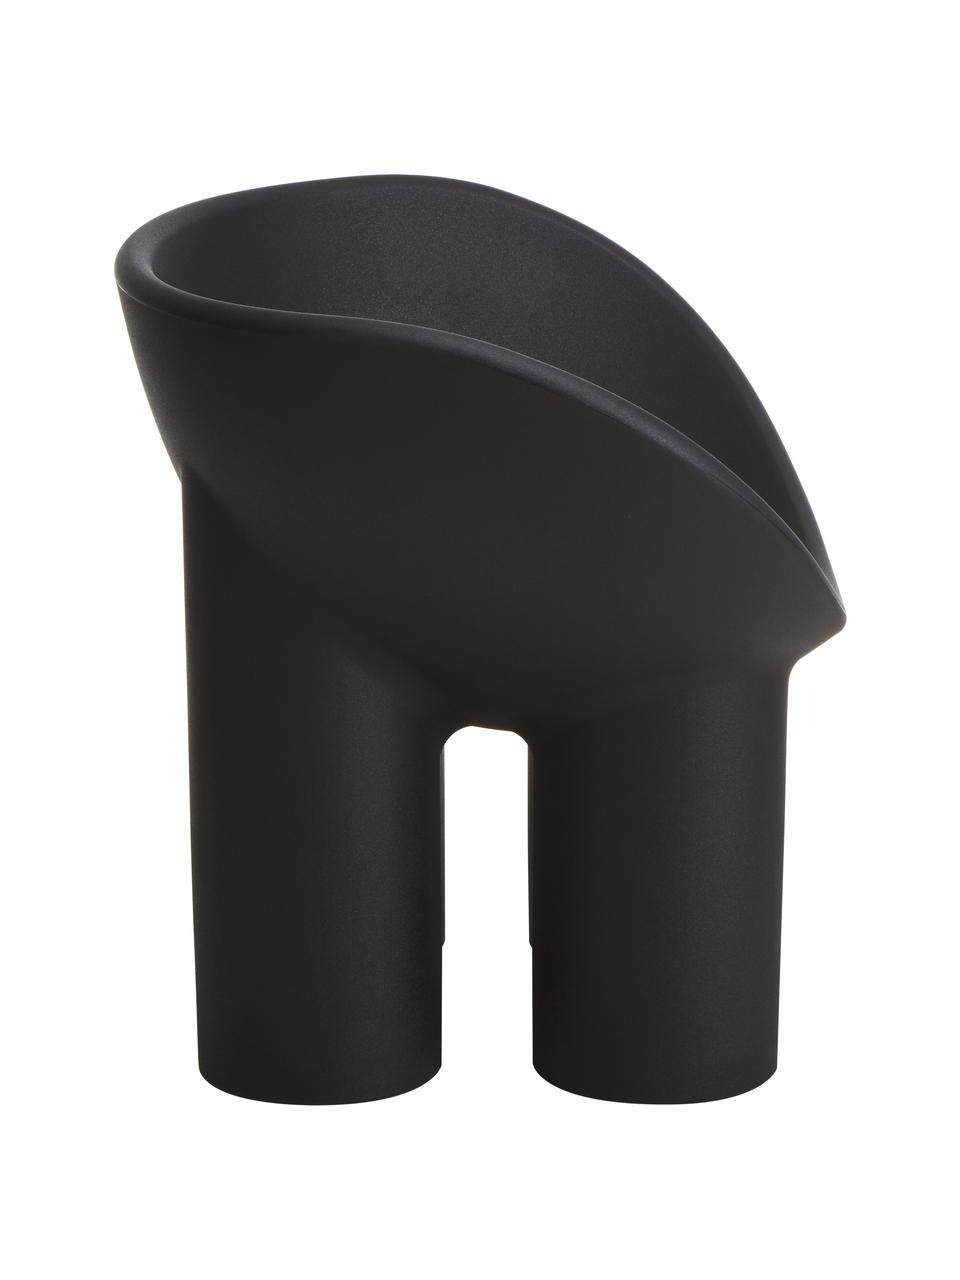 Fotel Roly Poly, Polietylen, wyprodukowany formowaniem rotacyjnym, Antracytowy, S 84 x G 57 cm